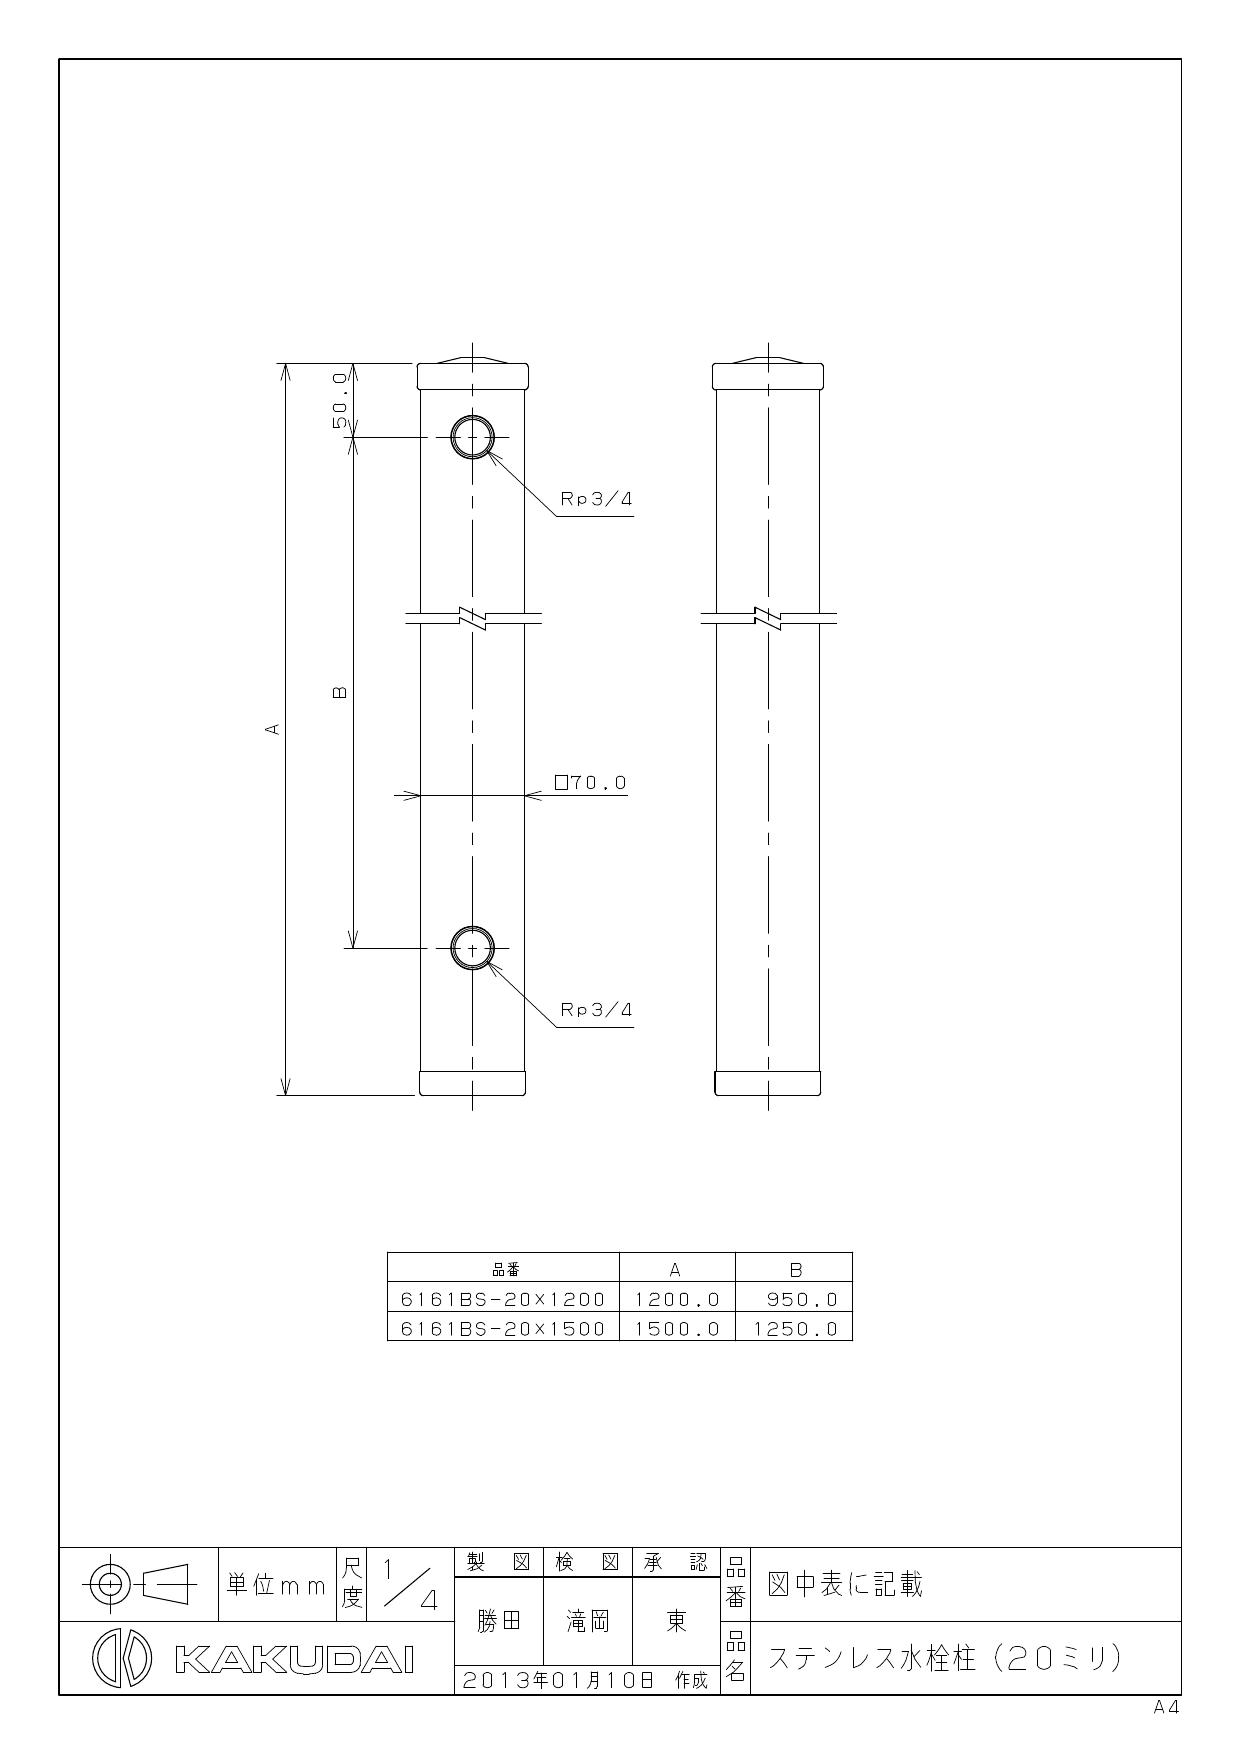 カクダイ 6161BS-20X1200商品図面 | 通販 プロストア ダイレクト